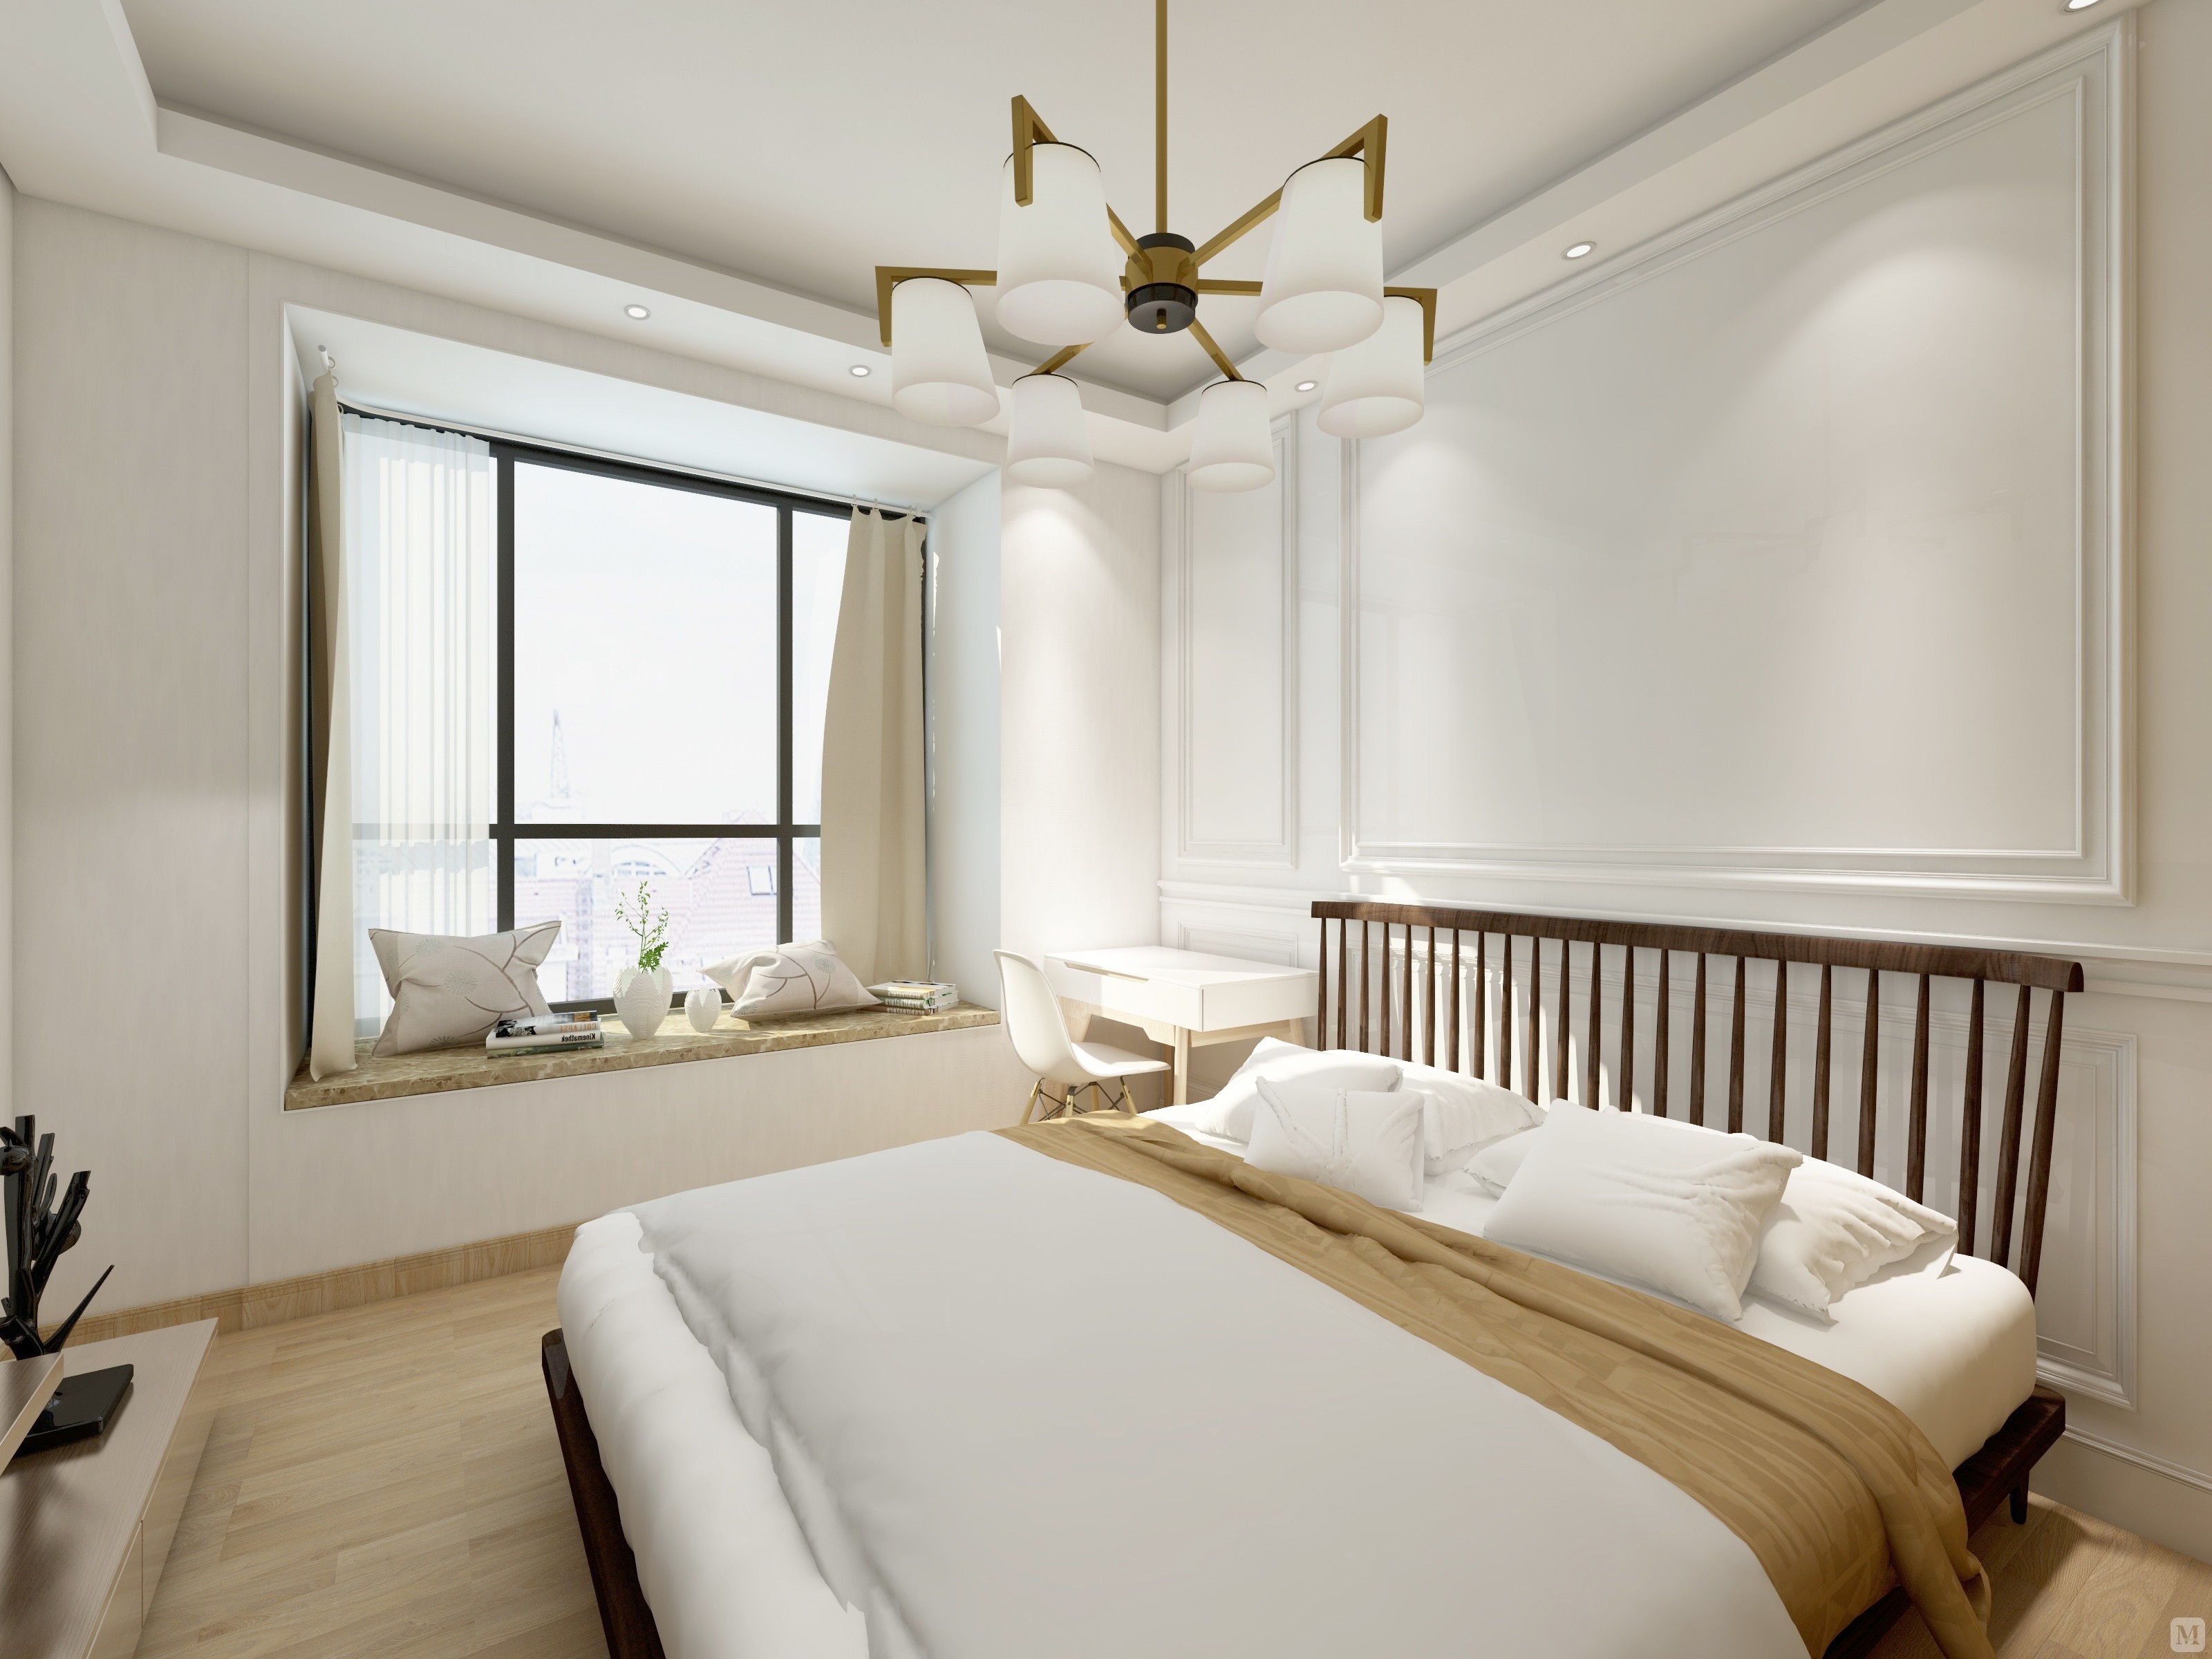 客厅的白色墙面发出的是淡雅清新的现代简欧味道,时尚的米白色调沙发